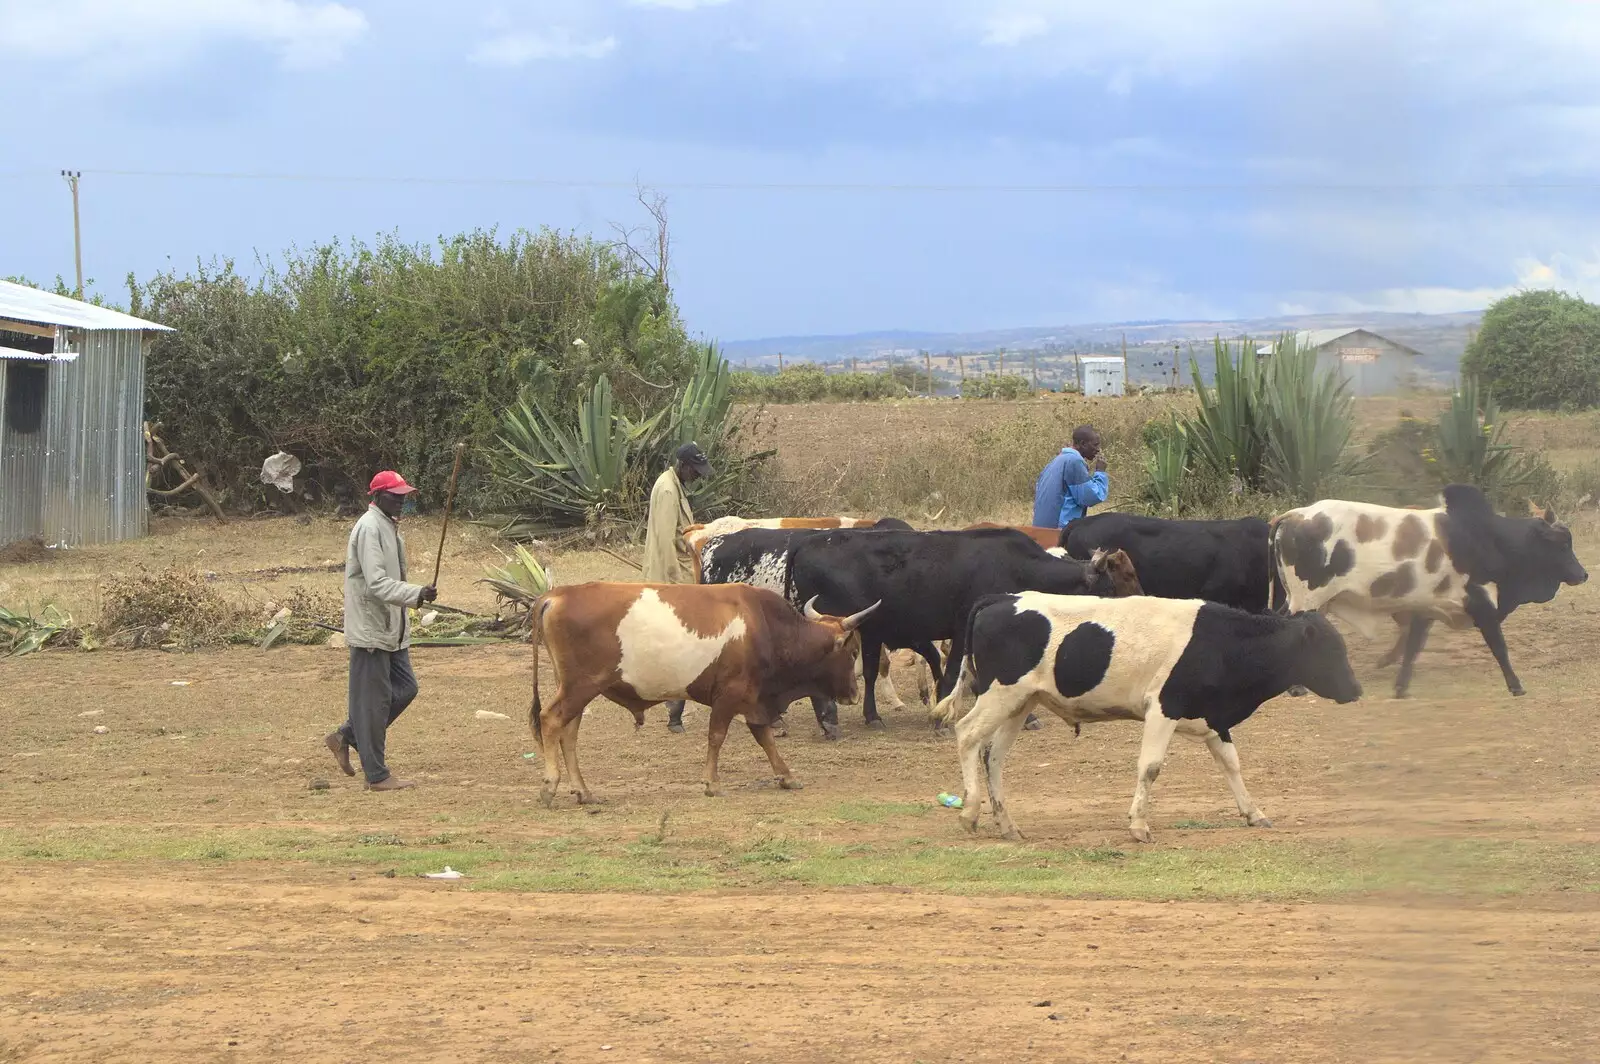 Cow herding, from Nairobi and the Road to Maasai Mara, Kenya, Africa - 1st November 2010